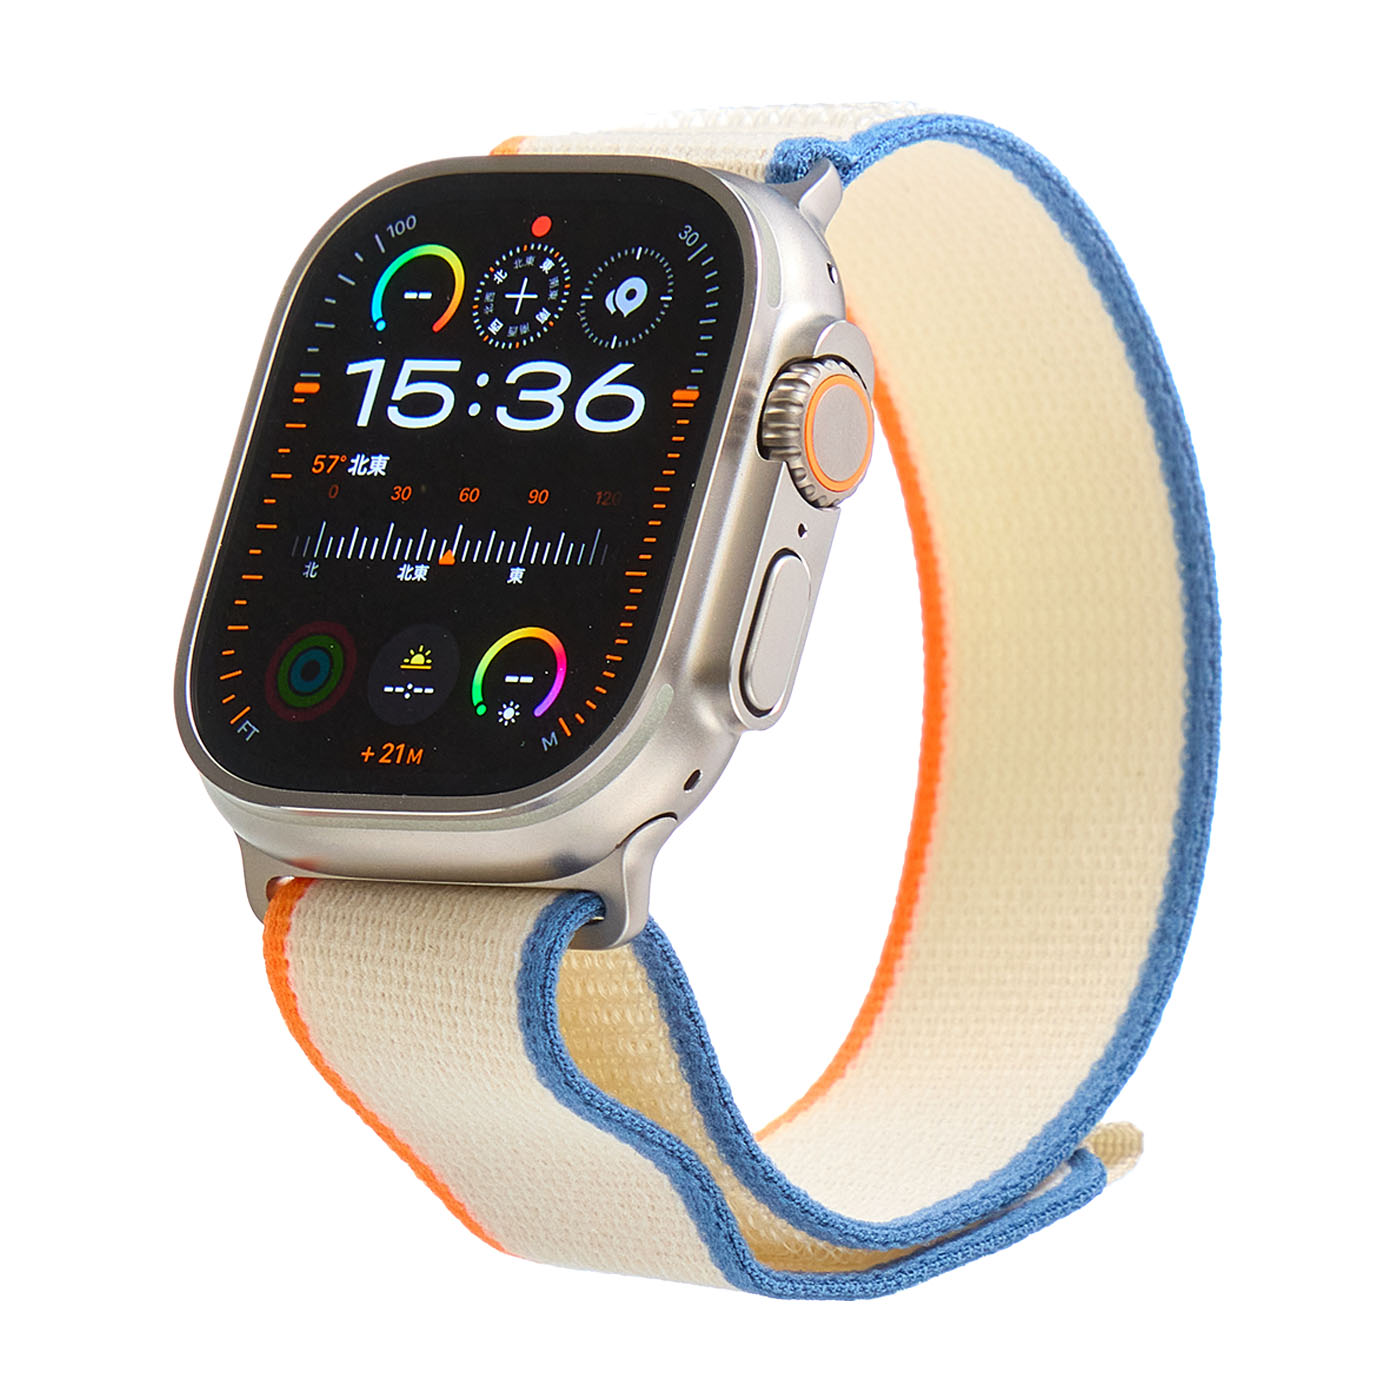 Apple Watch アルパインループ 新色 インディゴ